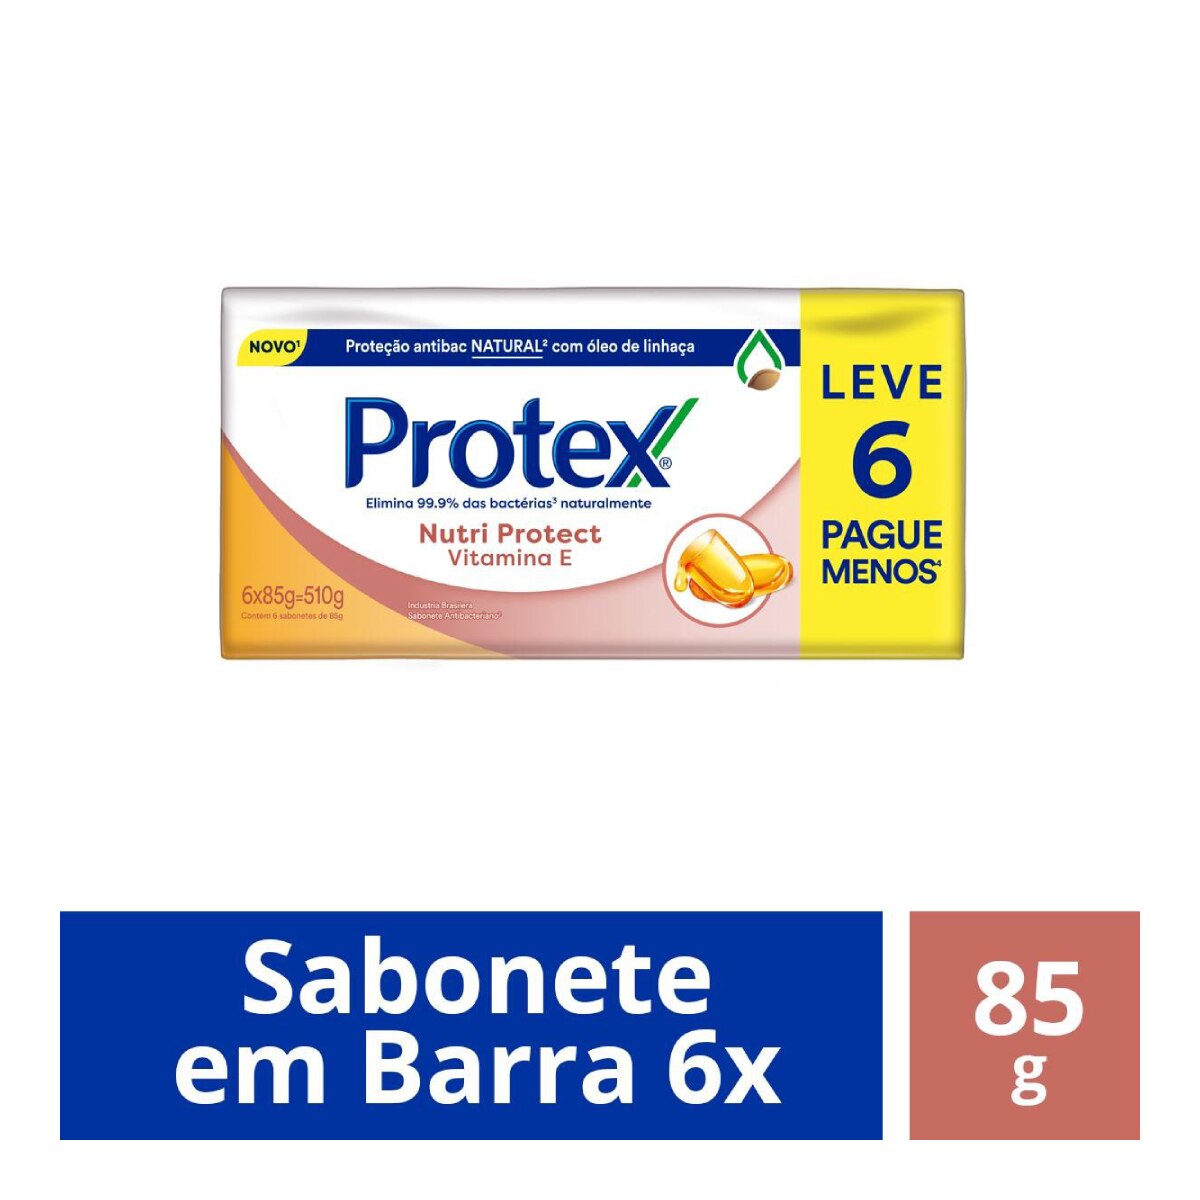 Sabonete em Barra Protex Nutri Protect Vitamina E 85g Leve 6 Pague Menos